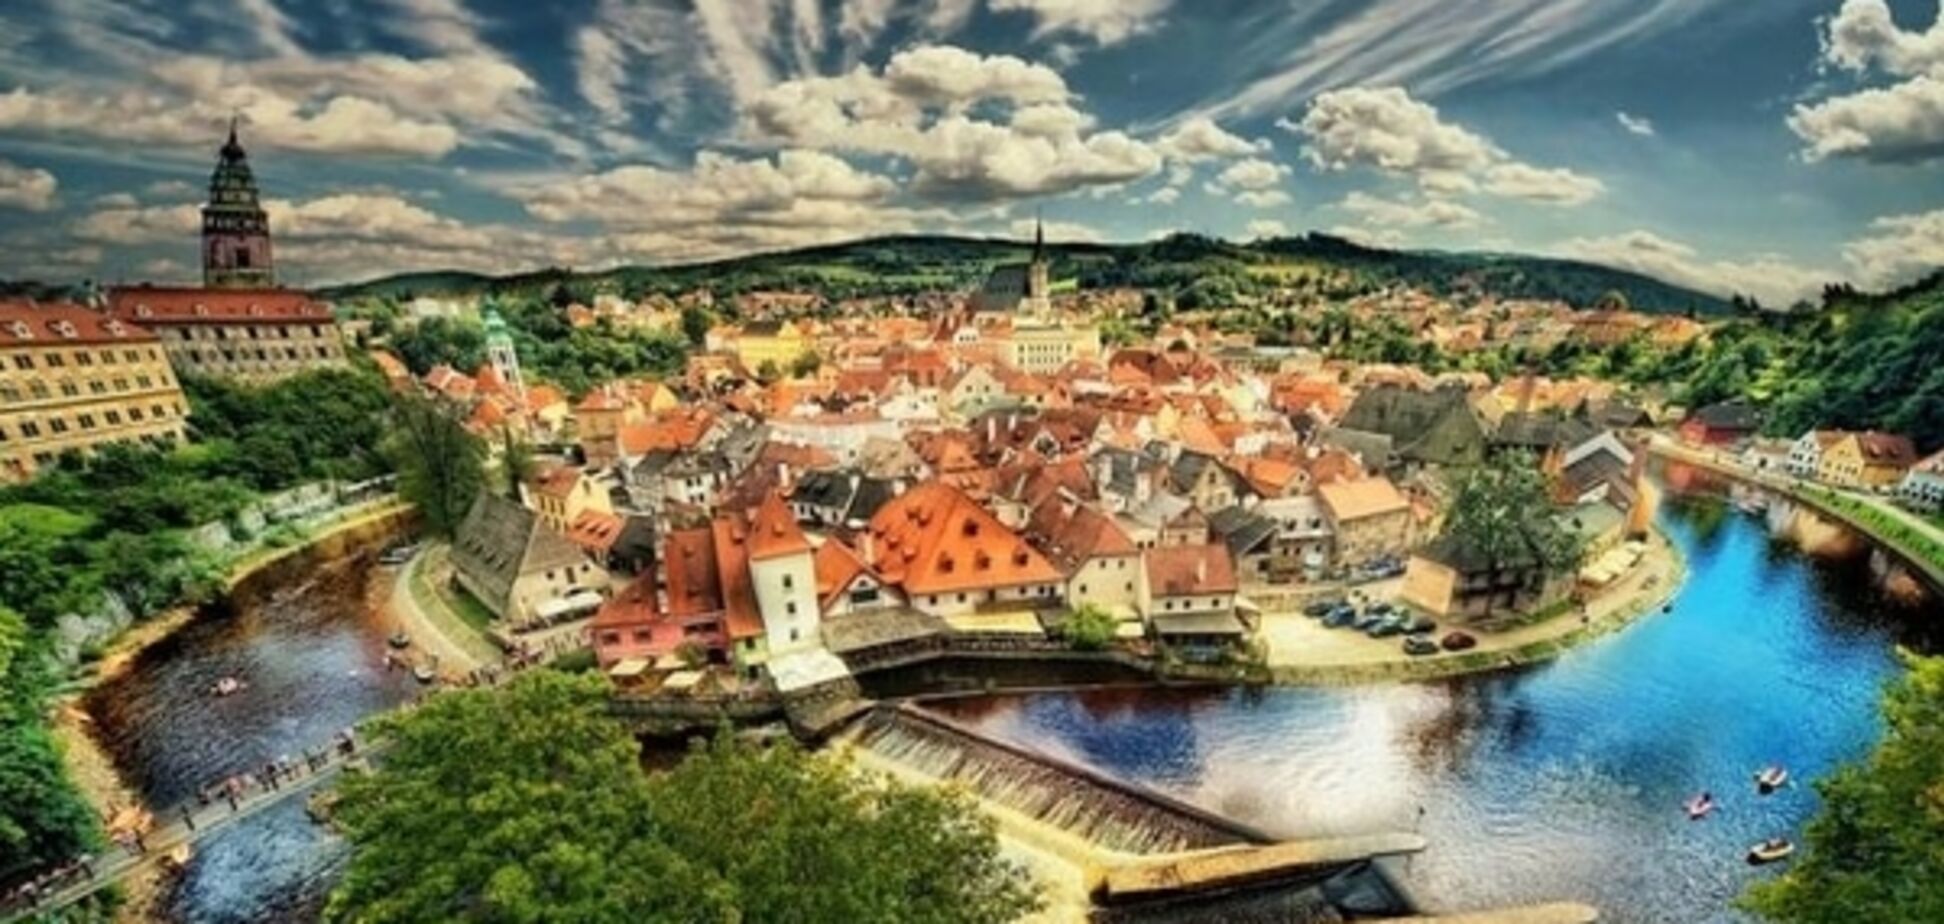 10 живописных чешских городков с интересной историей